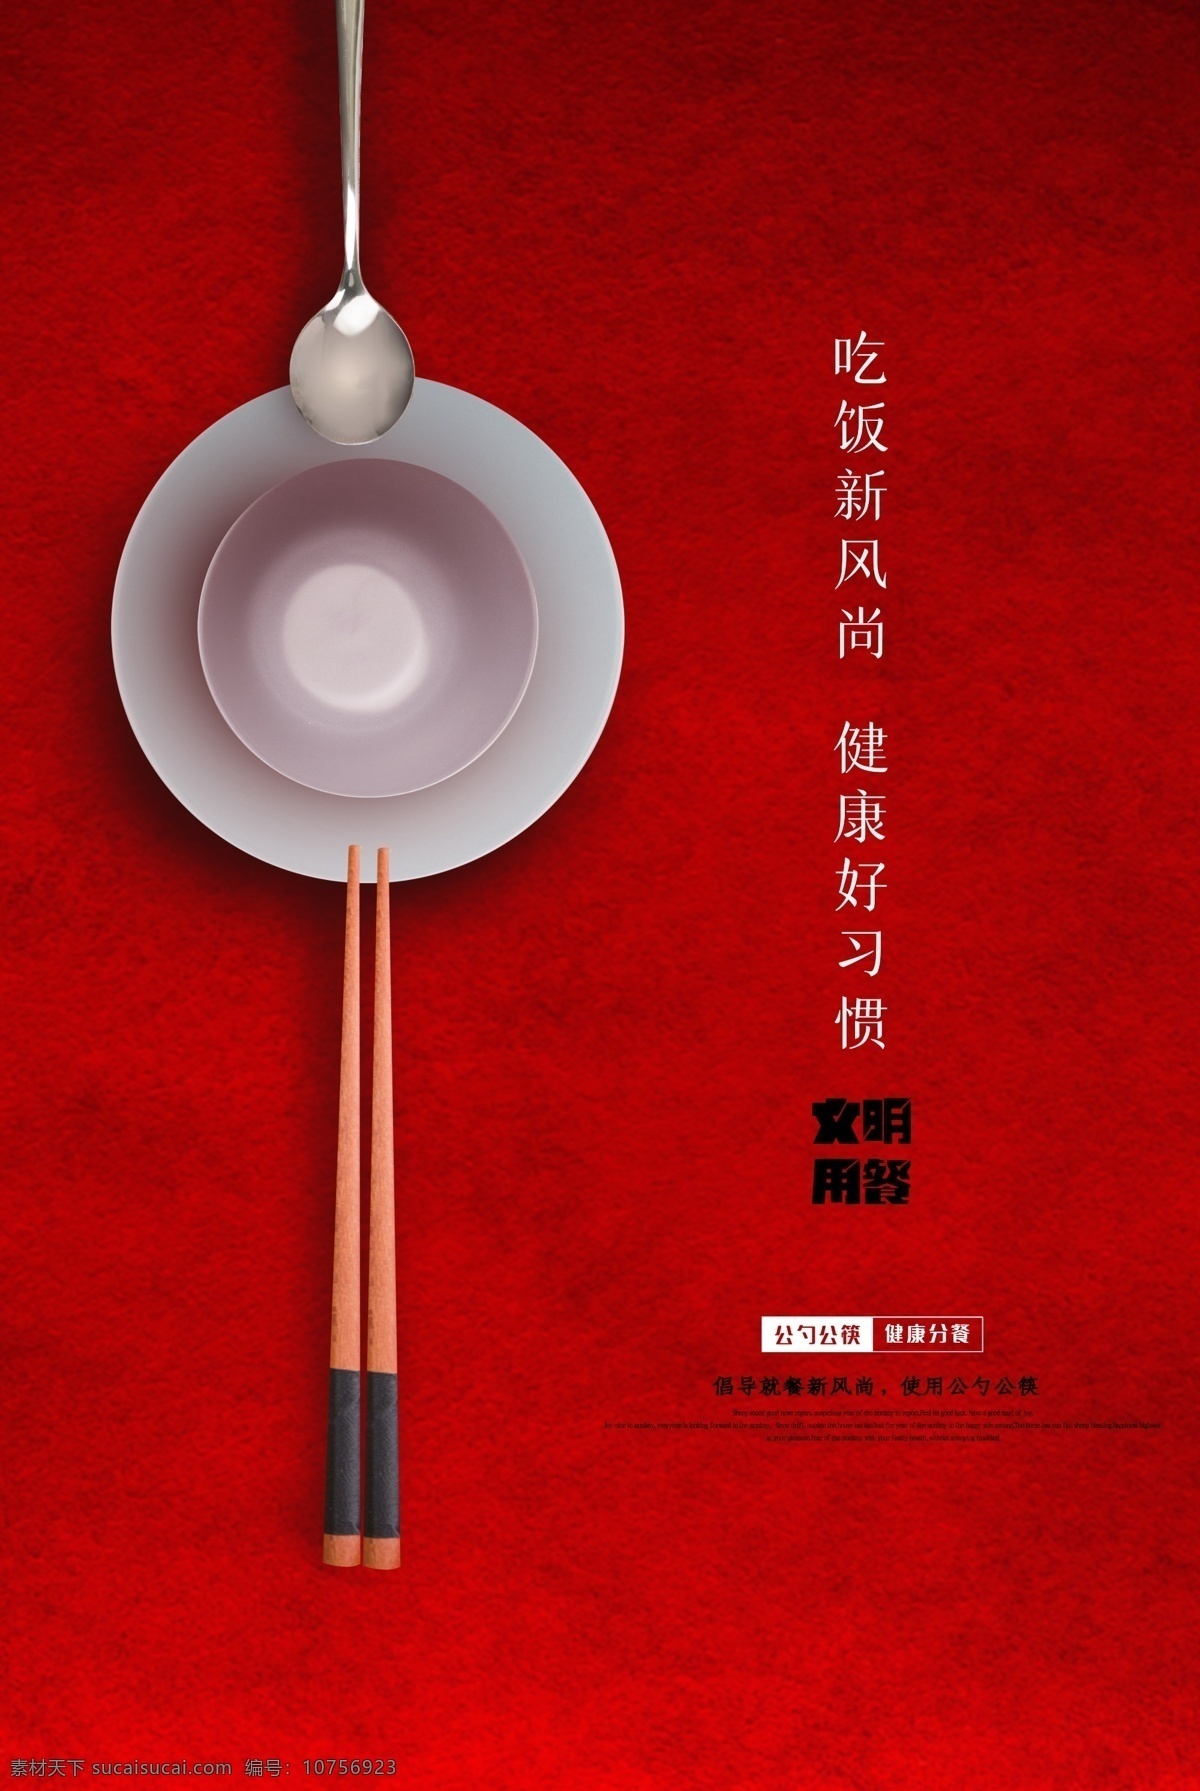 公 勺 筷 公益 海报 简约 公勺 公筷 健康 用餐